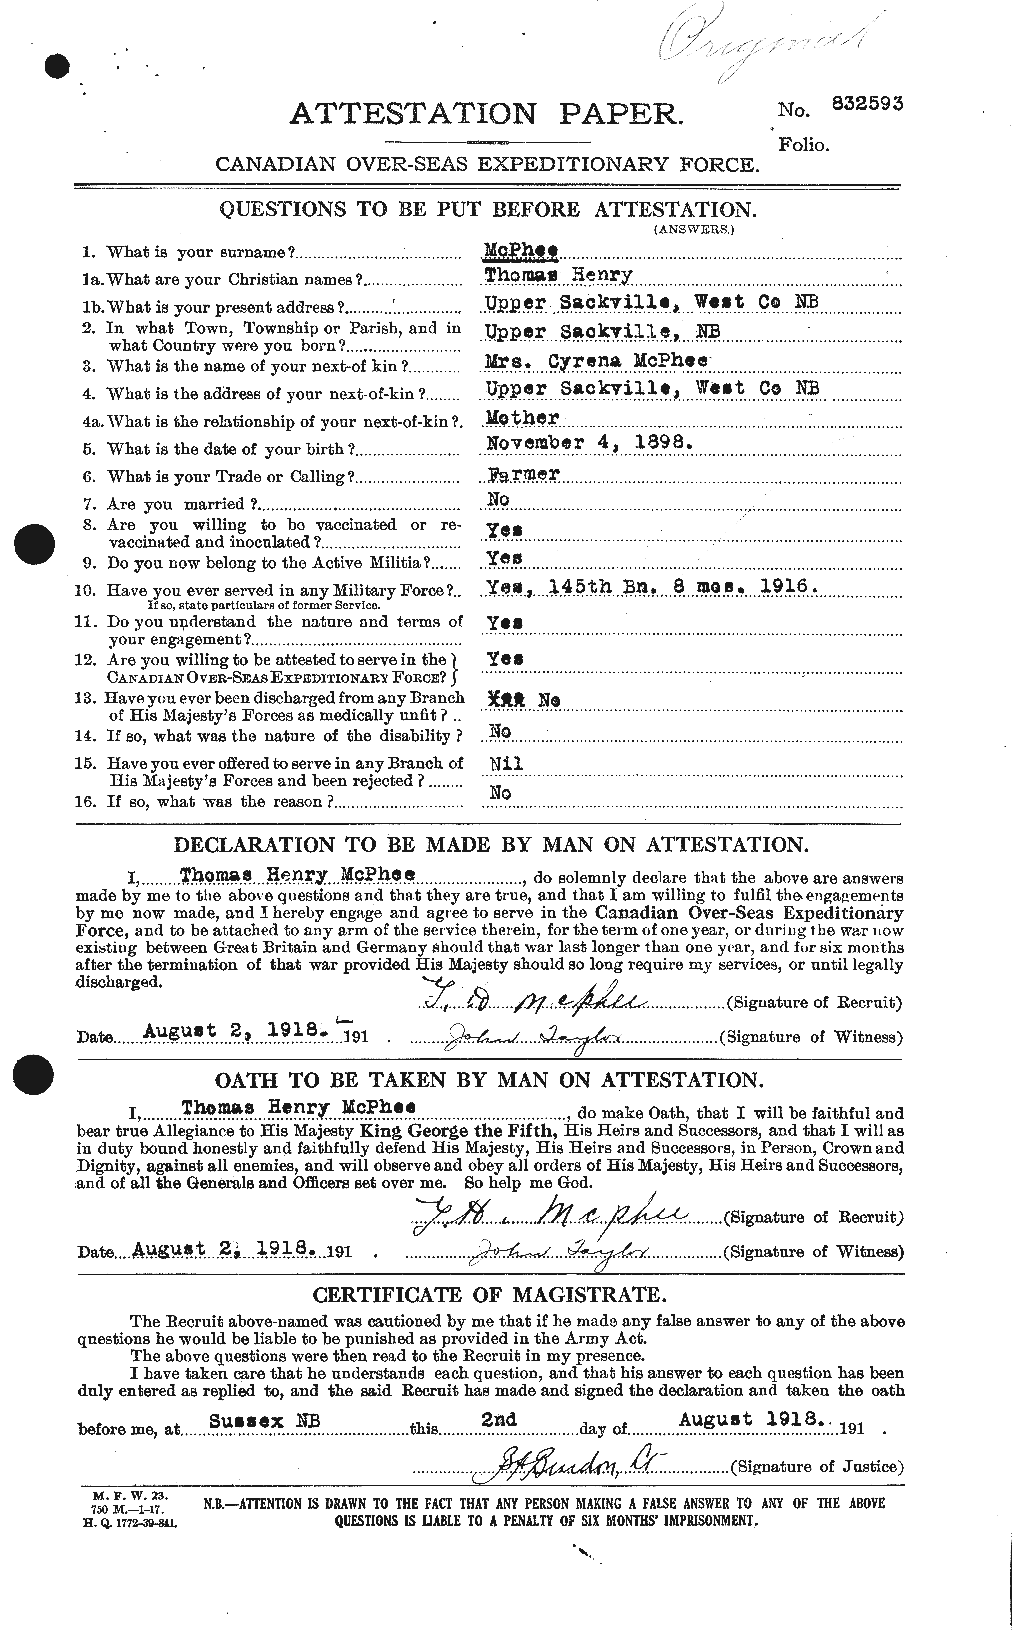 Dossiers du Personnel de la Première Guerre mondiale - CEC 541197a